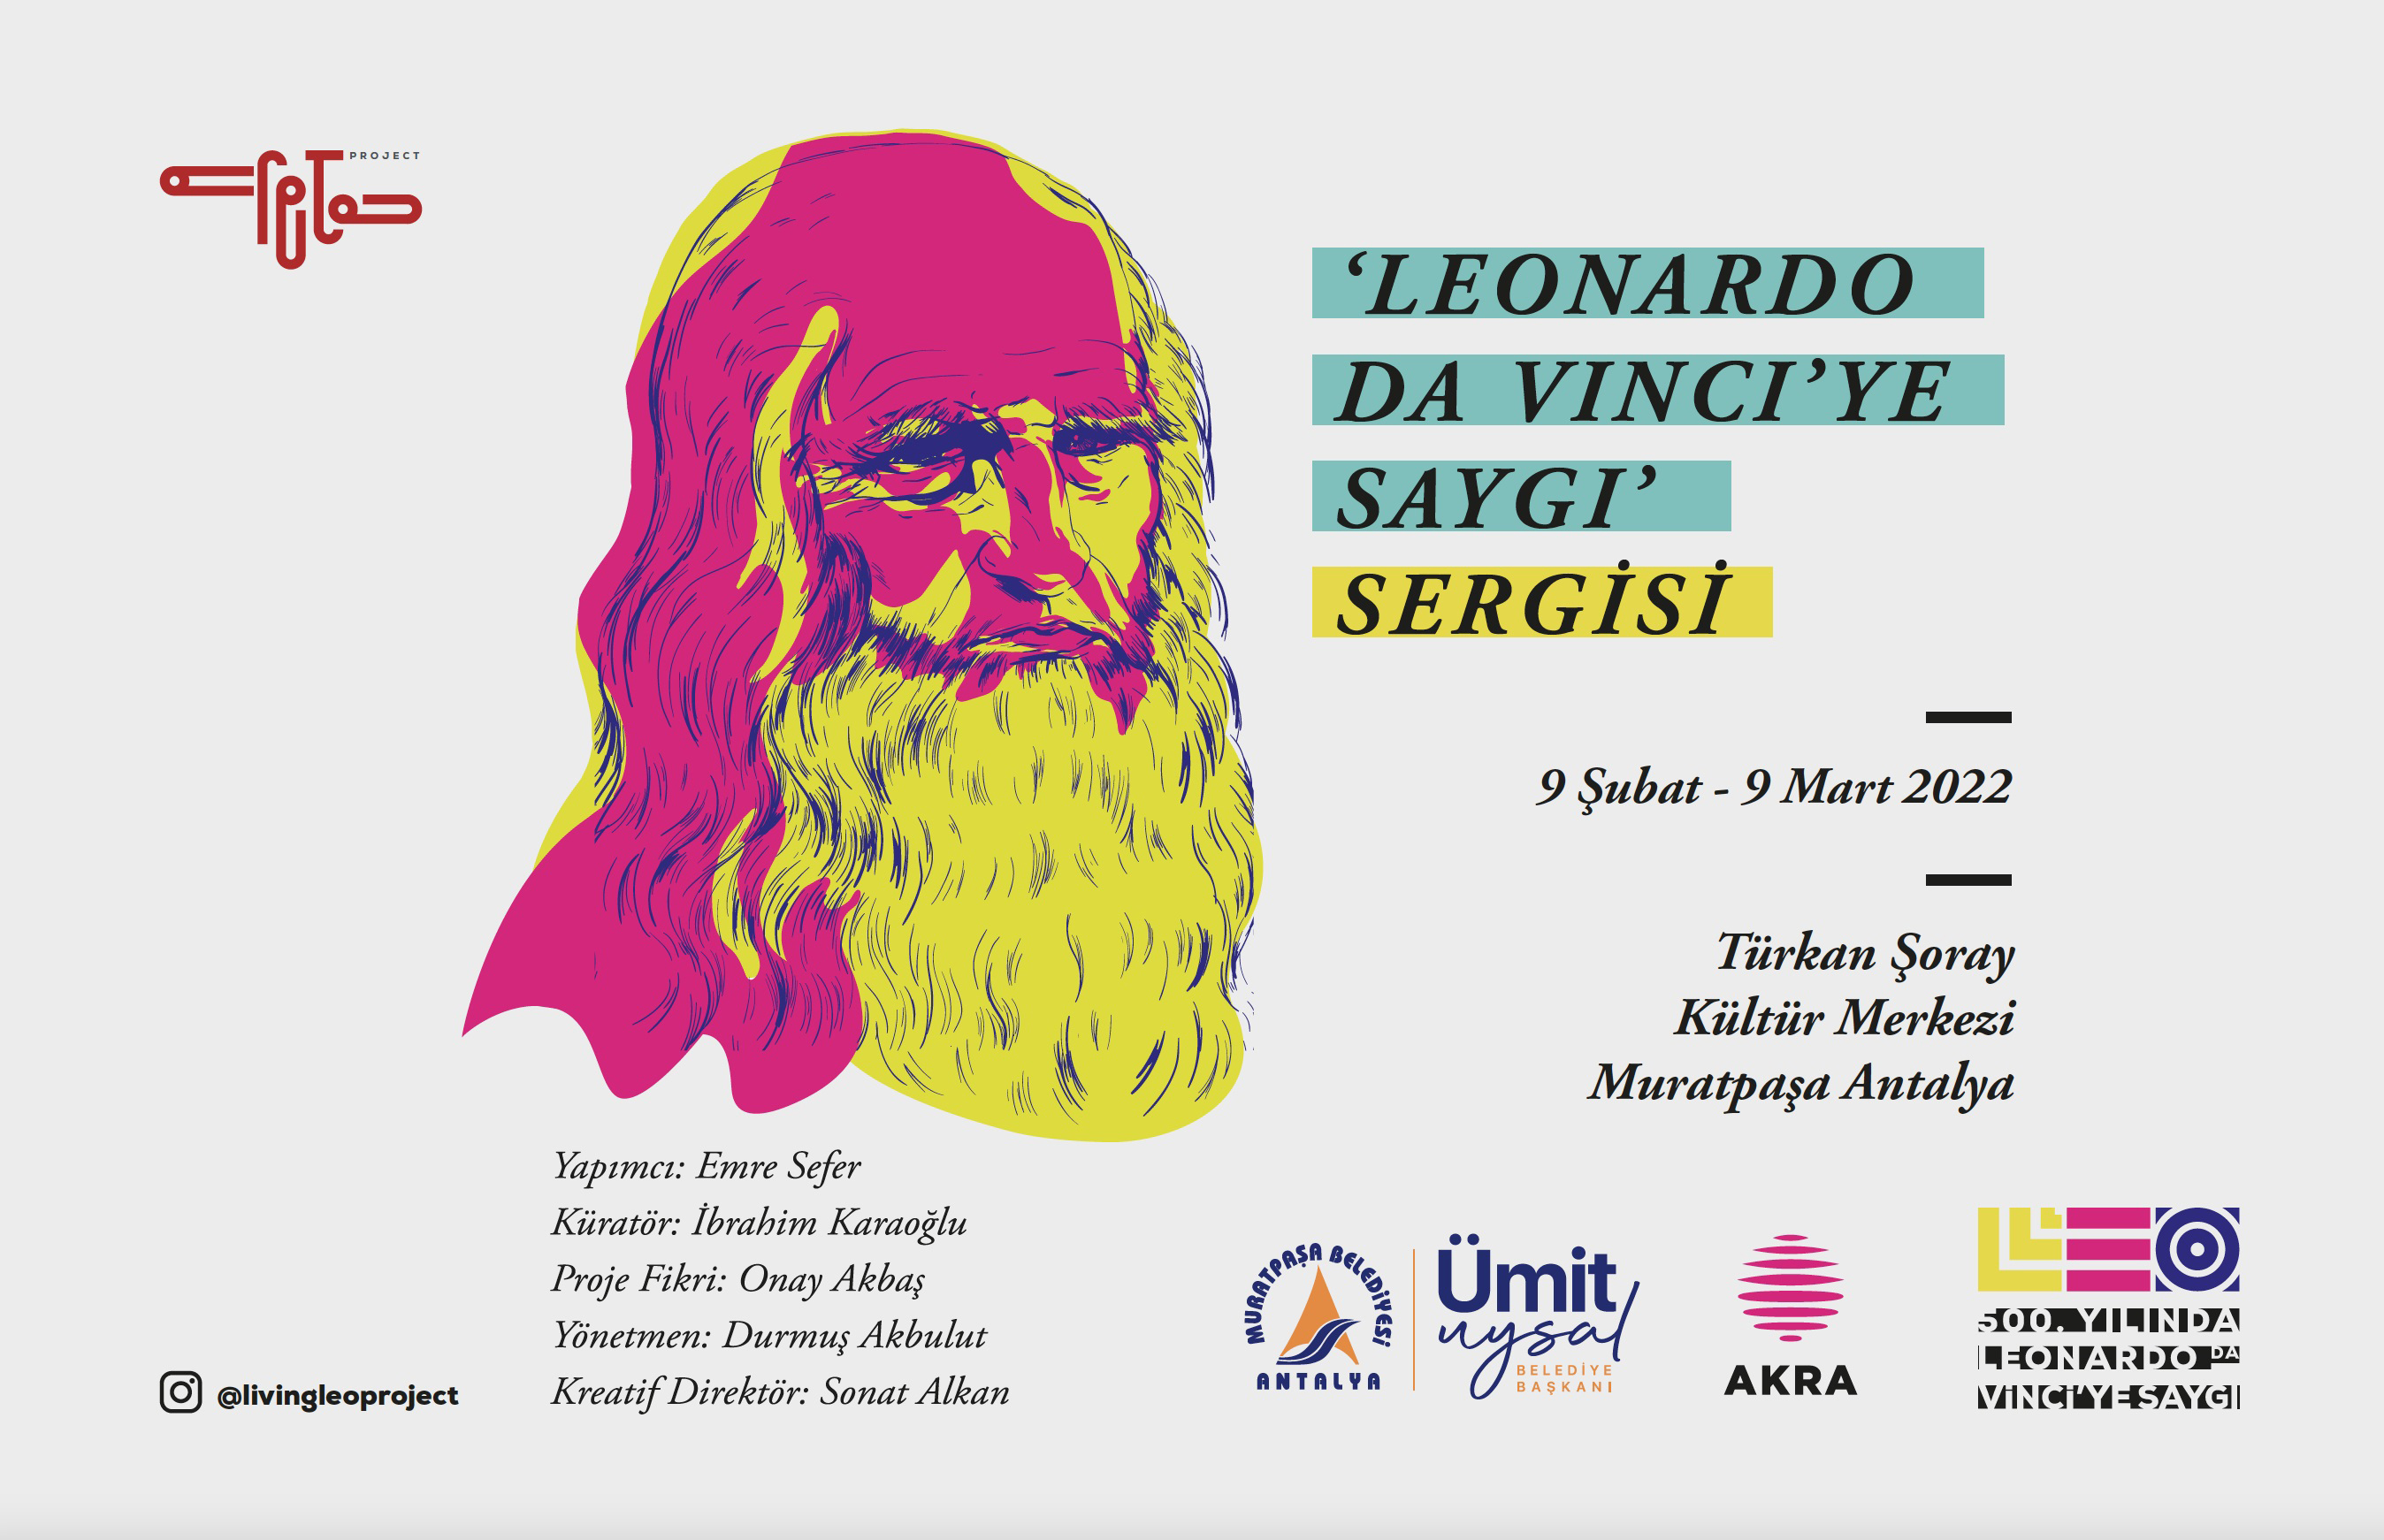 Türkan Şoray Kültür Merkezi’nde Leonarda da Vinci’ye Saygı sergisi